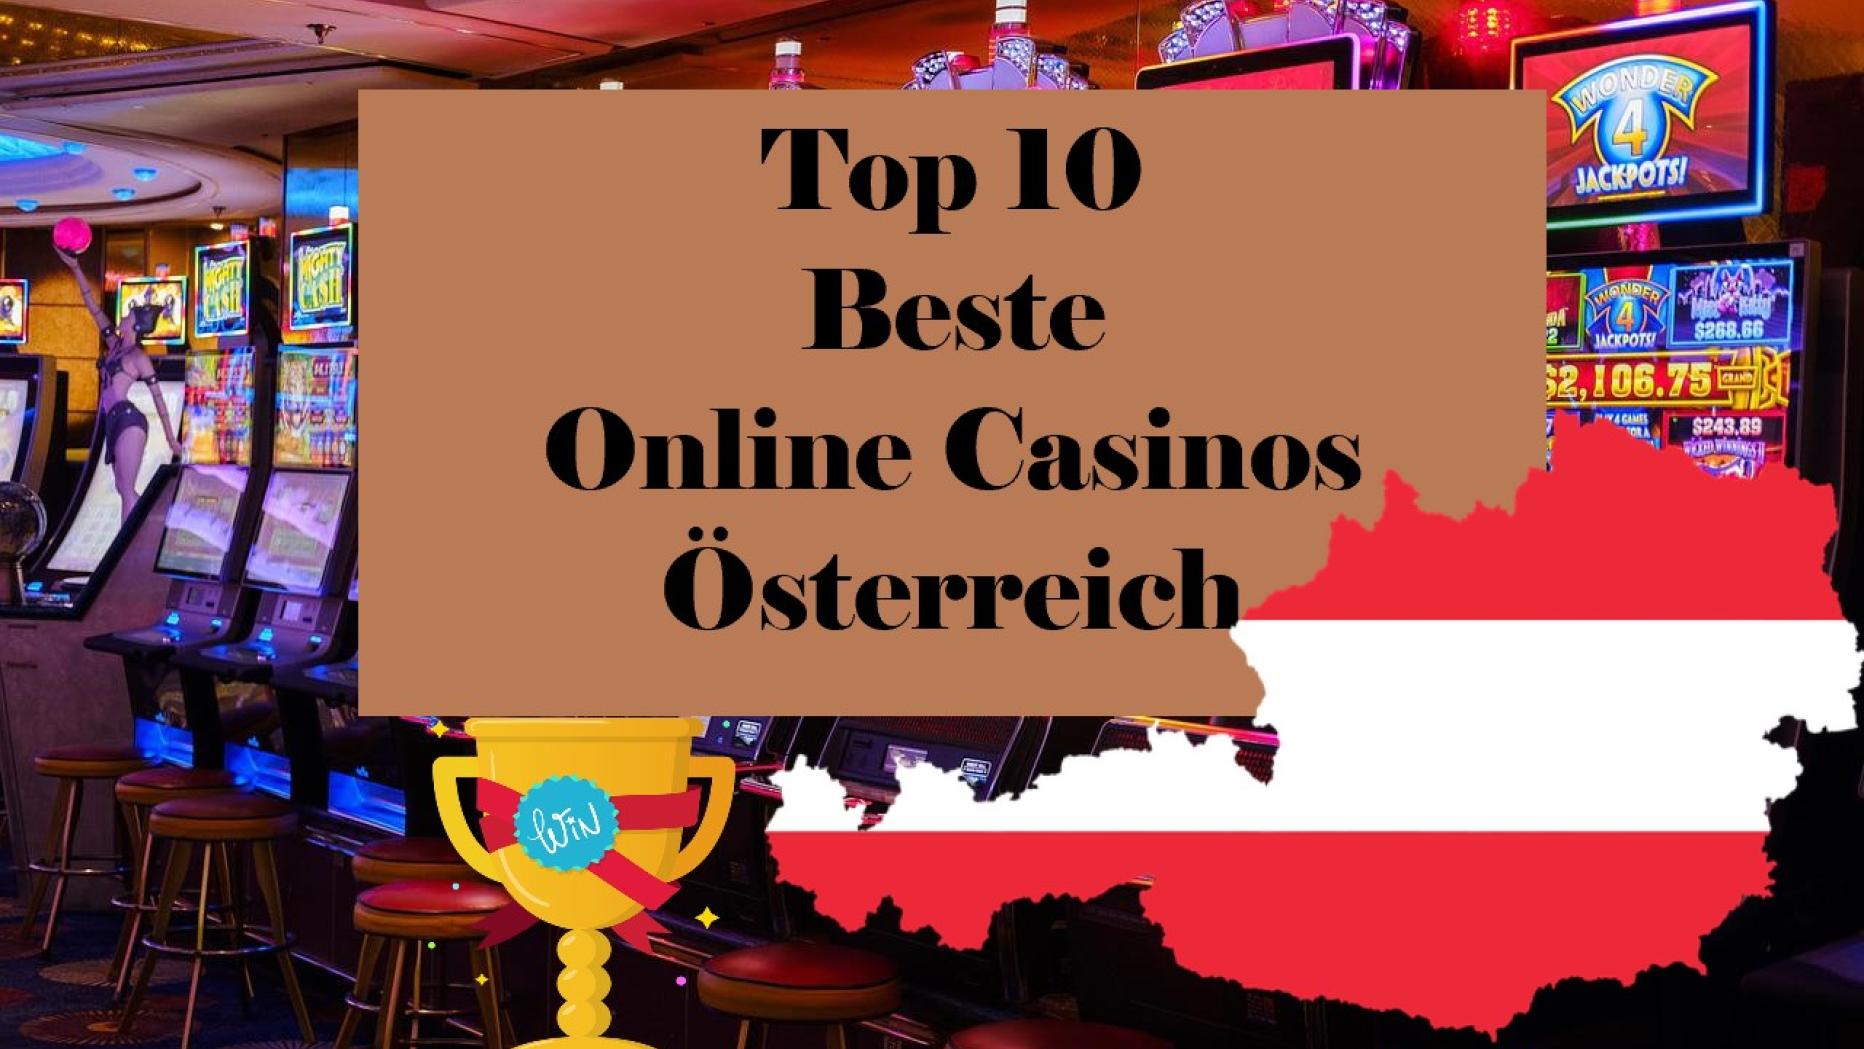 Sie können uns später danken - 3 Gründe, nicht mehr an Casino Online Österreich zu denken